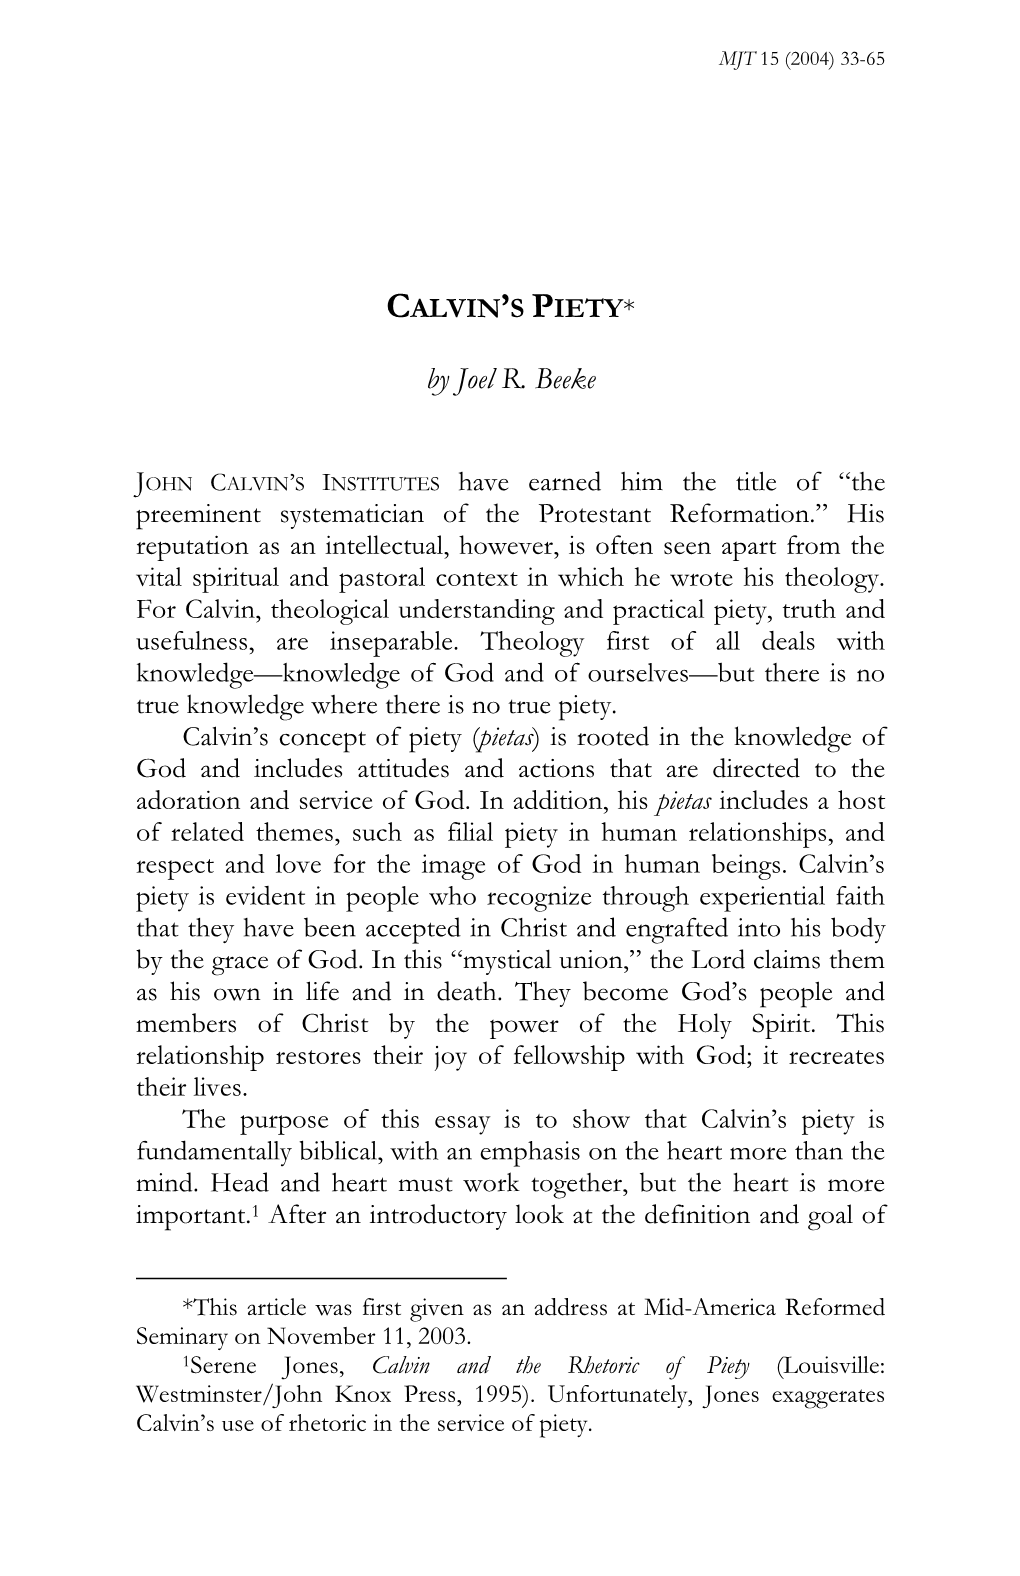 Calvin on Piety